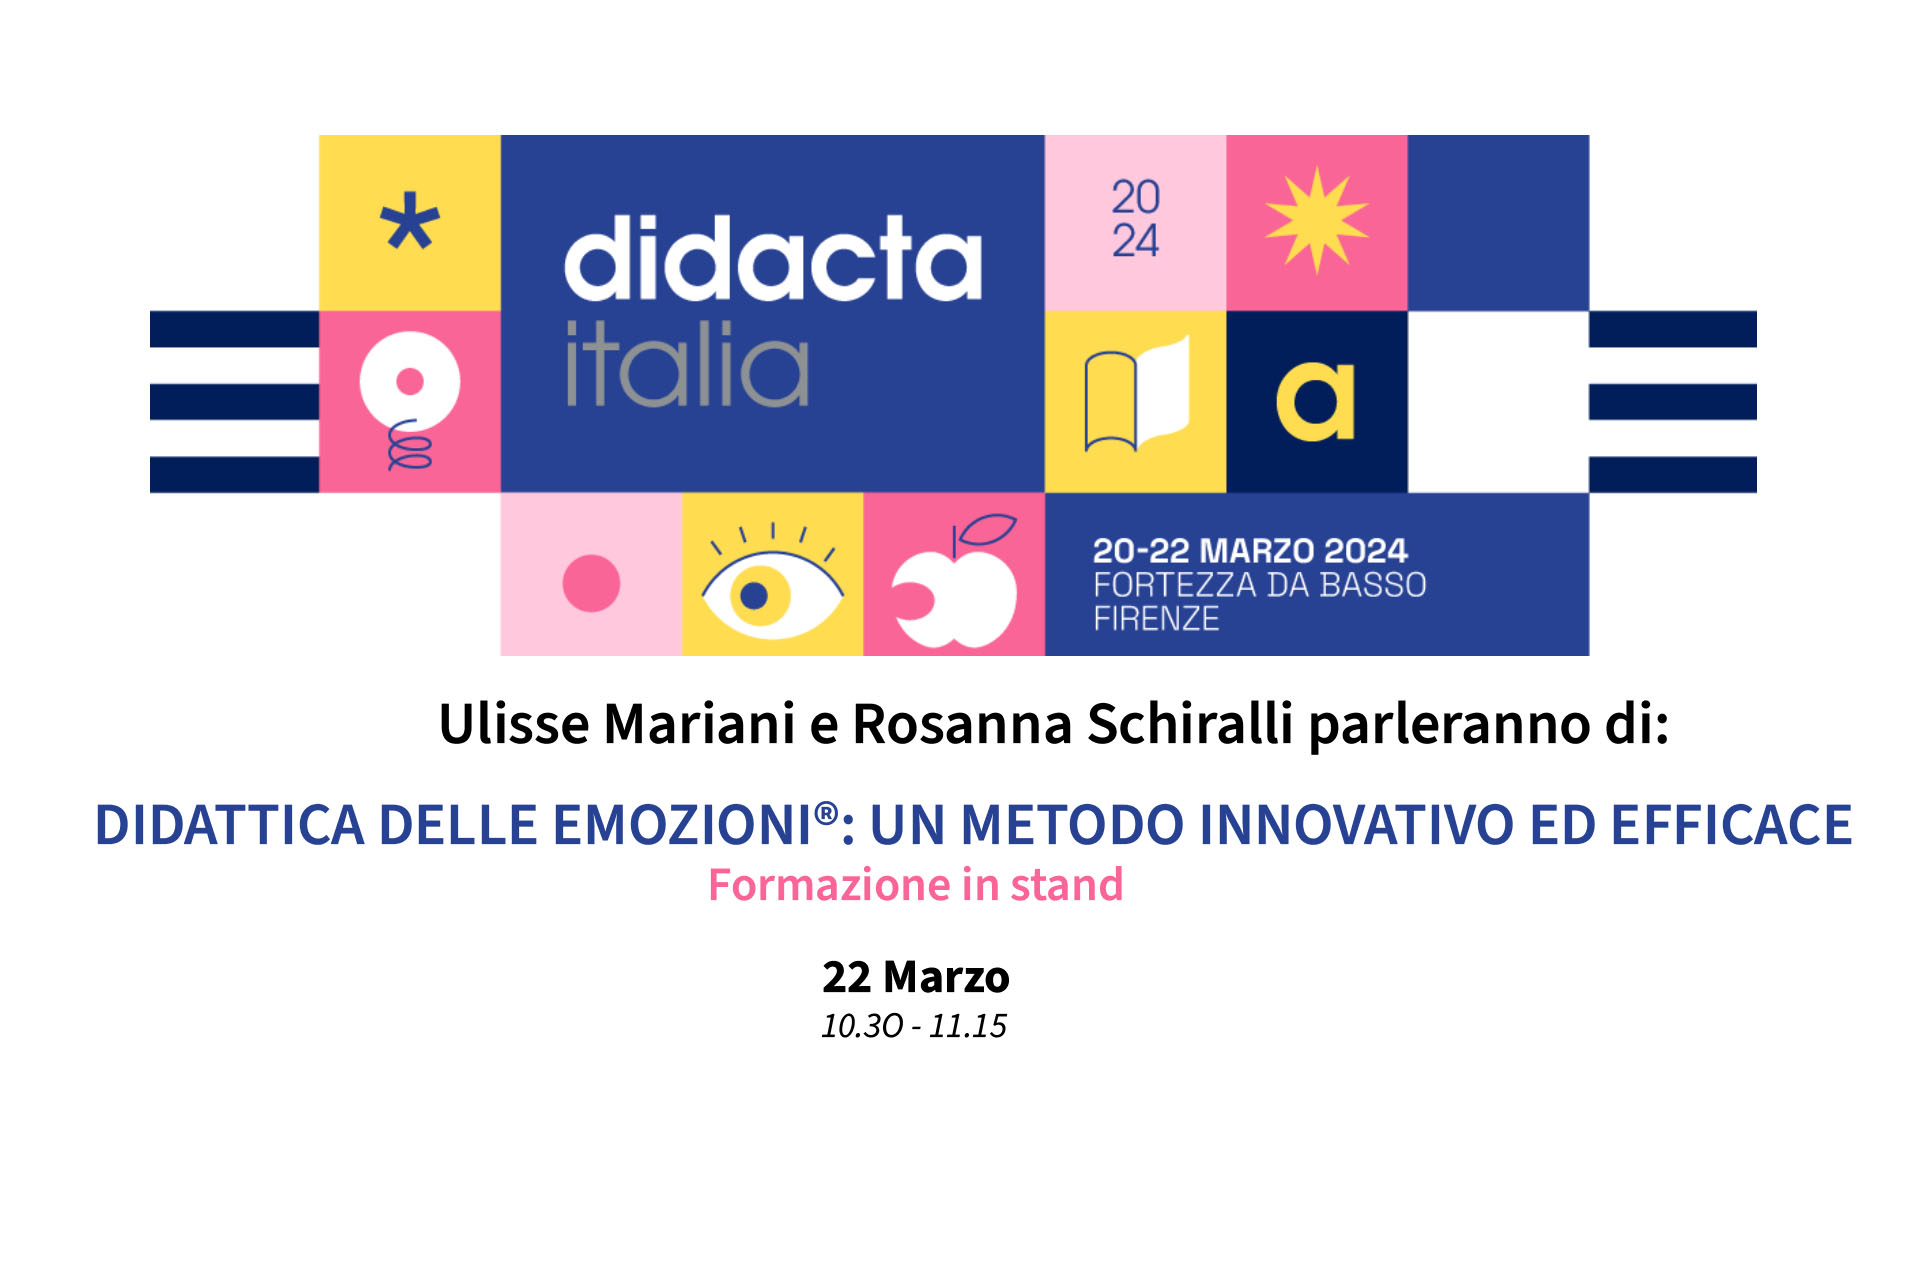 Didacta Italia 2024 - Didattica delle Emozioni® - Ulisse Mariani e Rosanna Schiralli - 22 Marzo